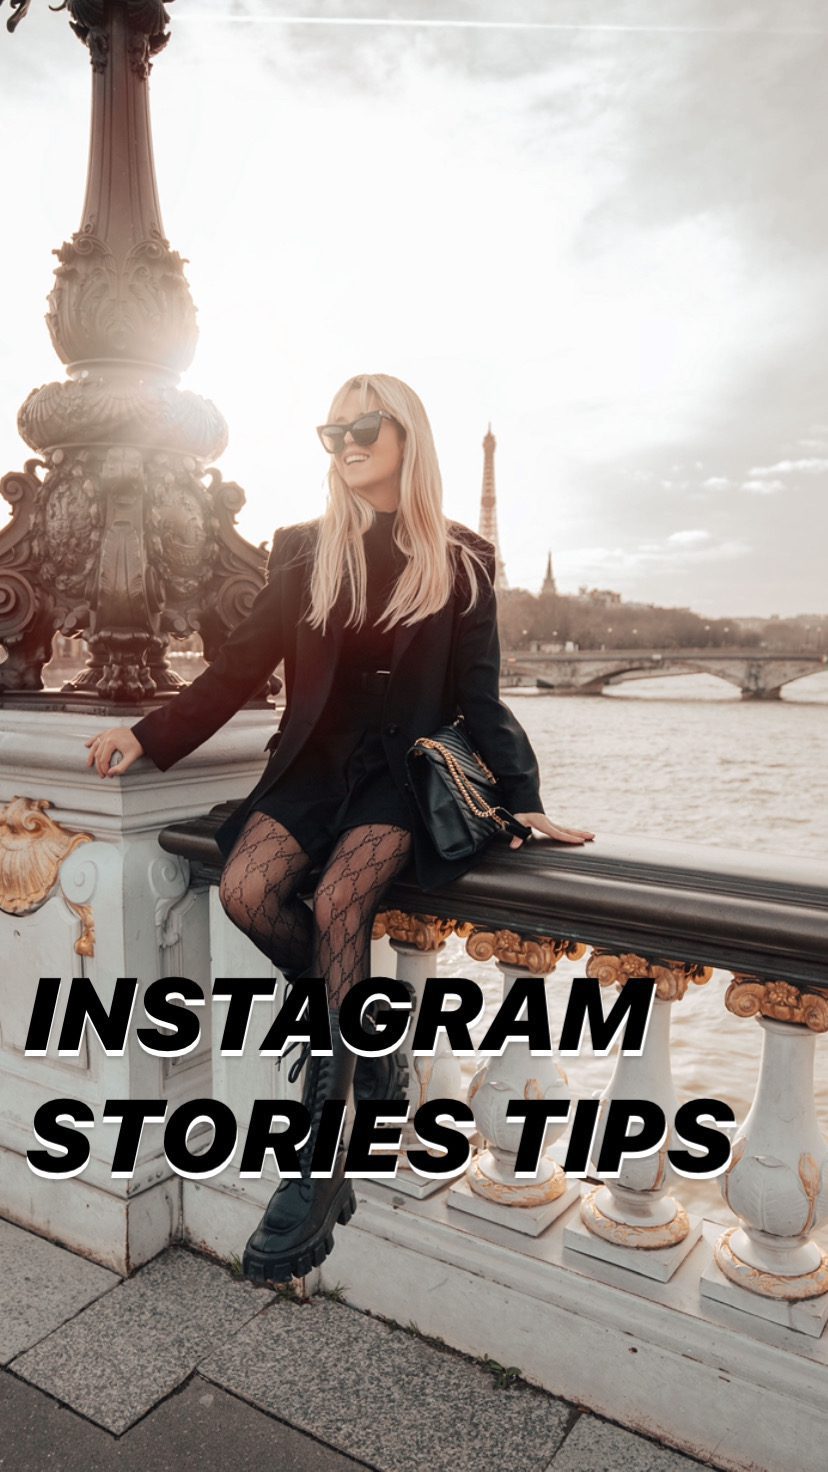 Instagram stories tips